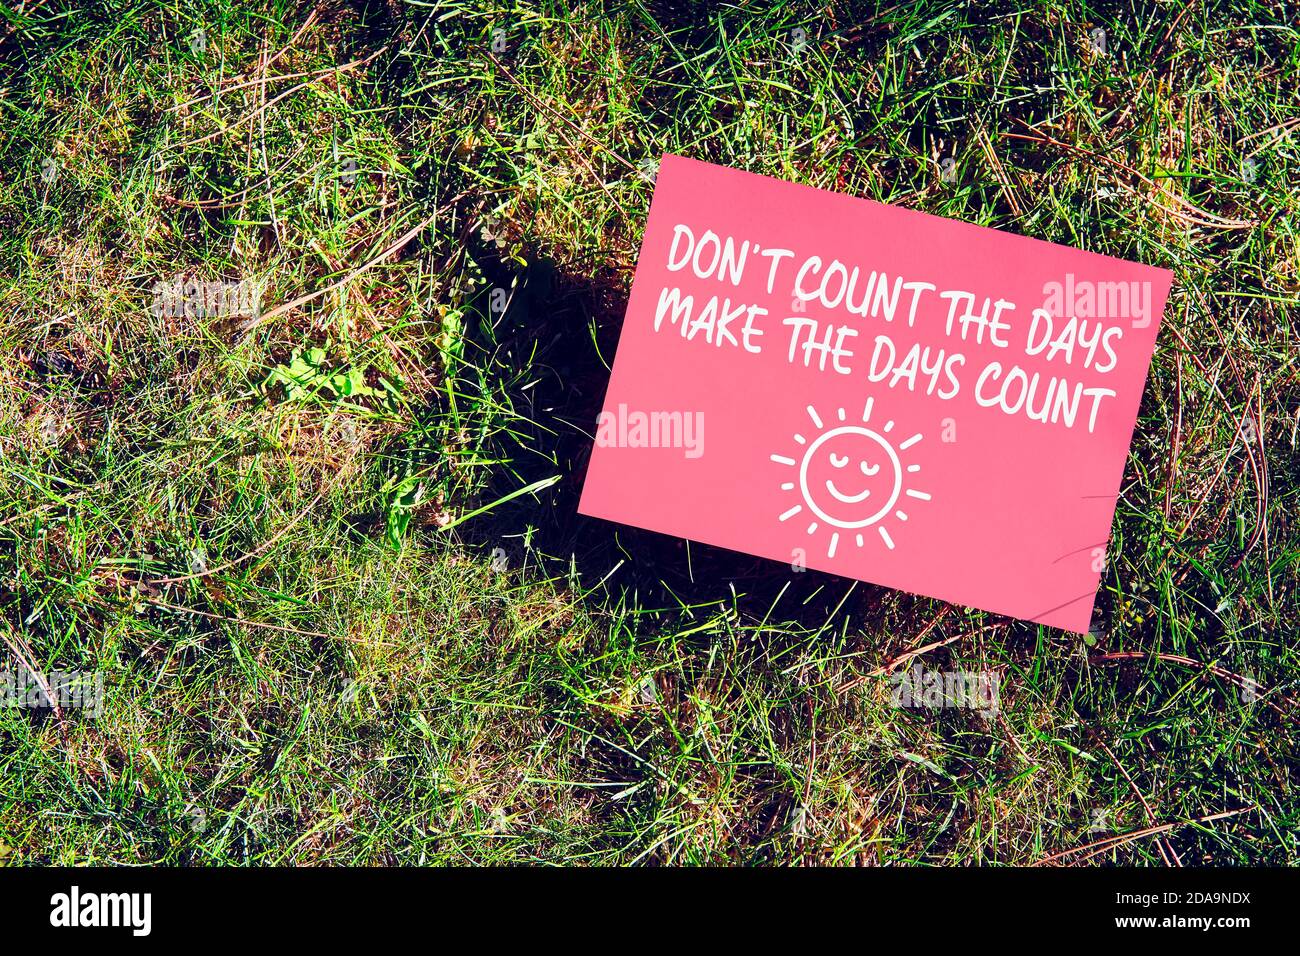 Inspirierende Botschaft von Zählen Sie nicht die Tage, lassen Sie die Tage zählen auf dem Papier auf grünem Gras in der Natur. Produktiv zu sein und das Beste aus dem Leben zu machen Stockfoto